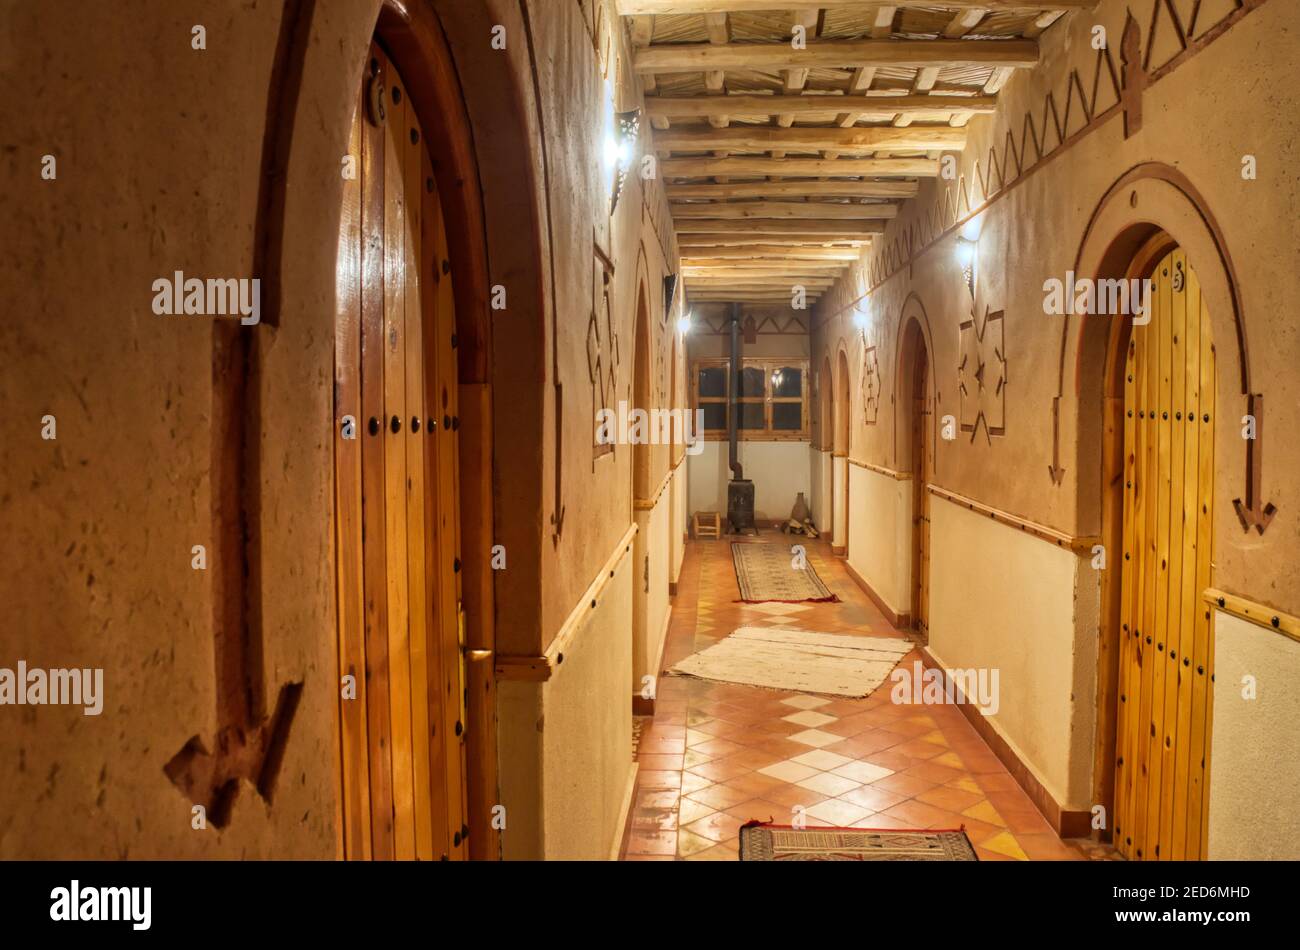 Corridoio dell'hotel con pareti in argilla e porte in legno Foto Stock